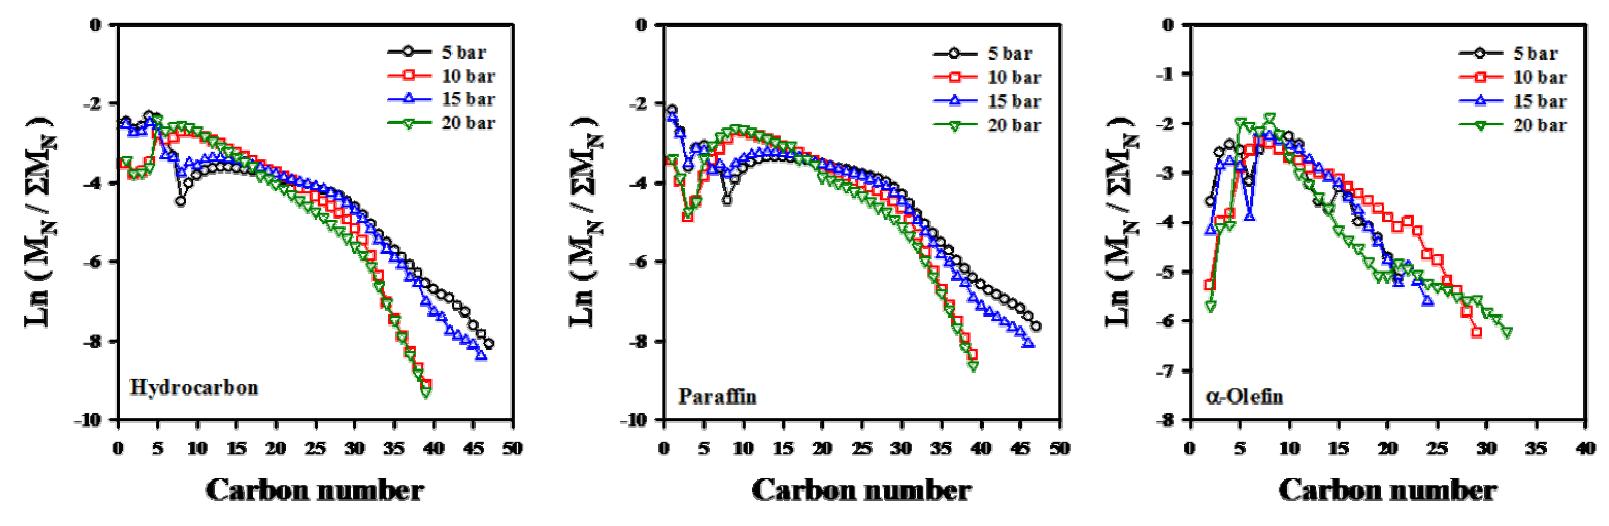 압력에 따른 탄화수소, α-올레핀, 파라핀의 분포변화.